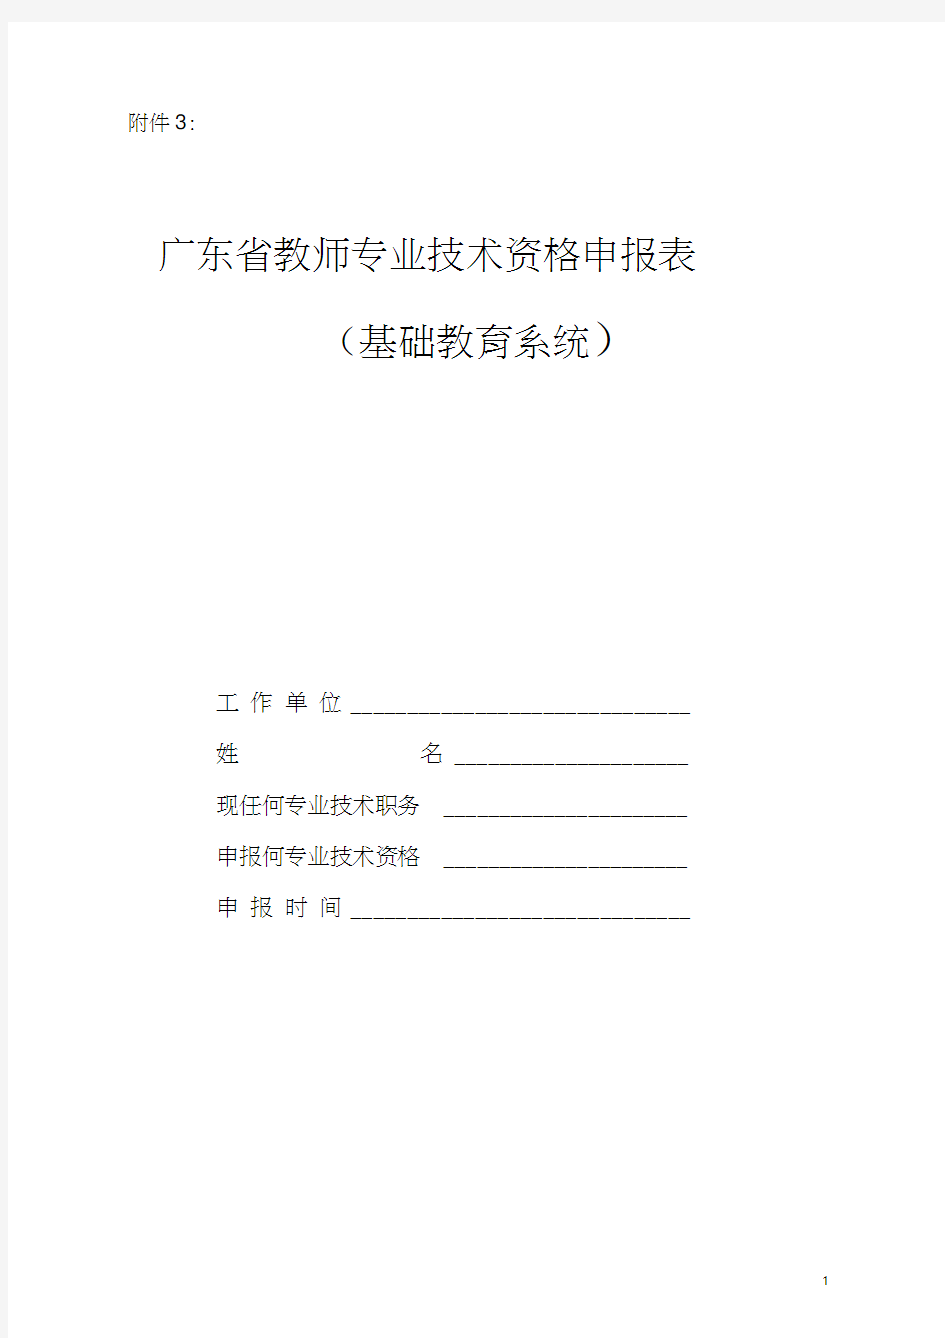 广东省教师专业技术资格申报表(基础教育系统)